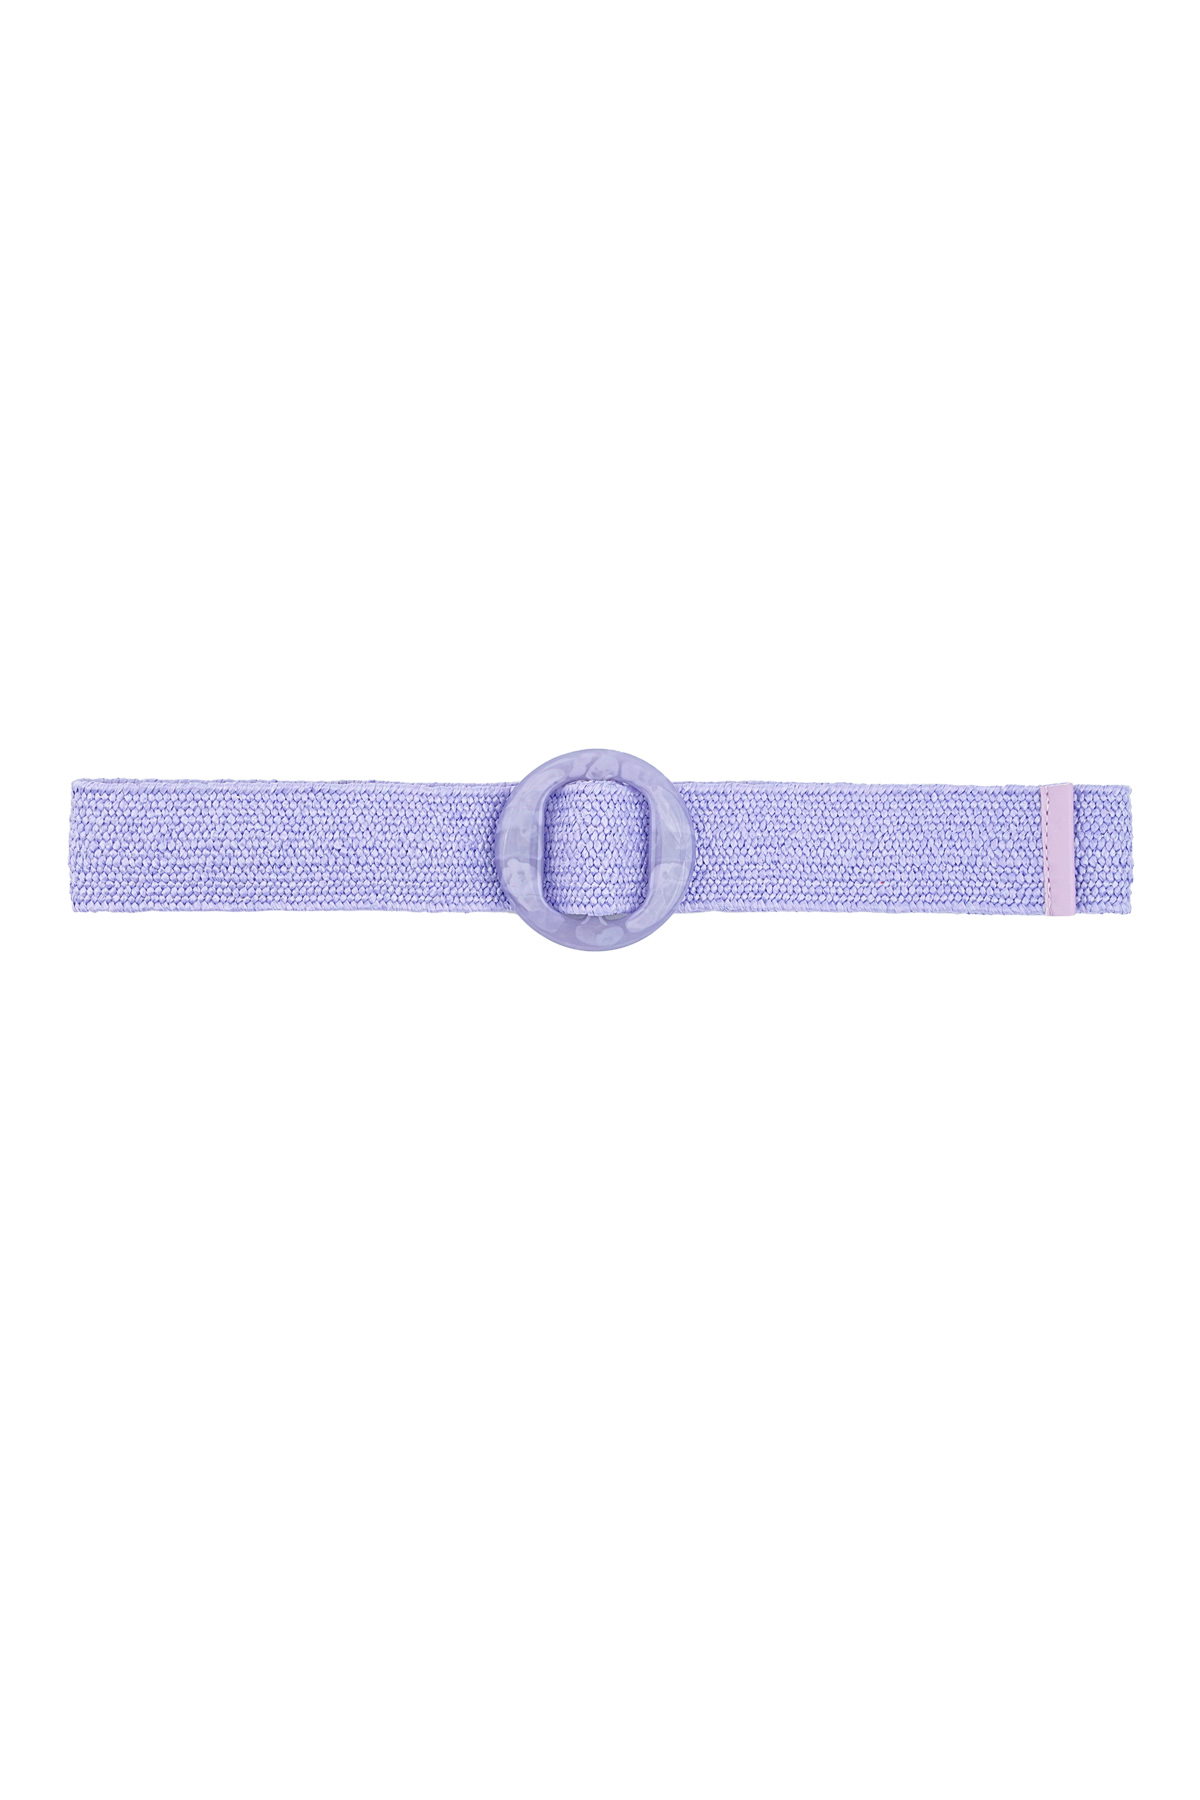 Cinturón estilo playero - violeta h5 